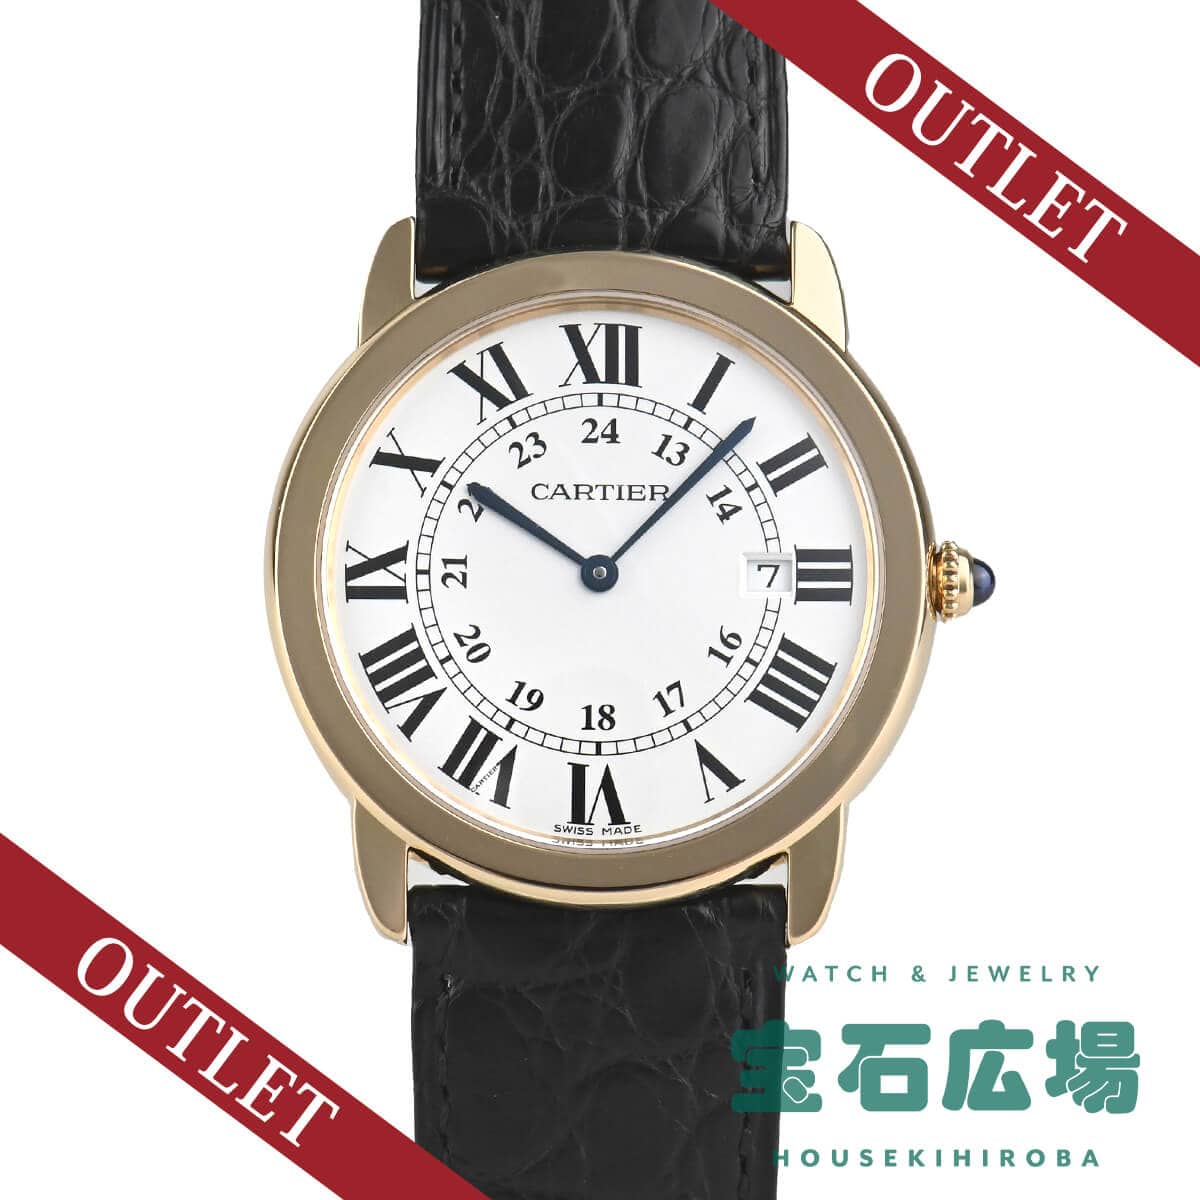 カルティエ 腕時計 ロンドソロ･ドゥ･カルティエXL【472】SJ